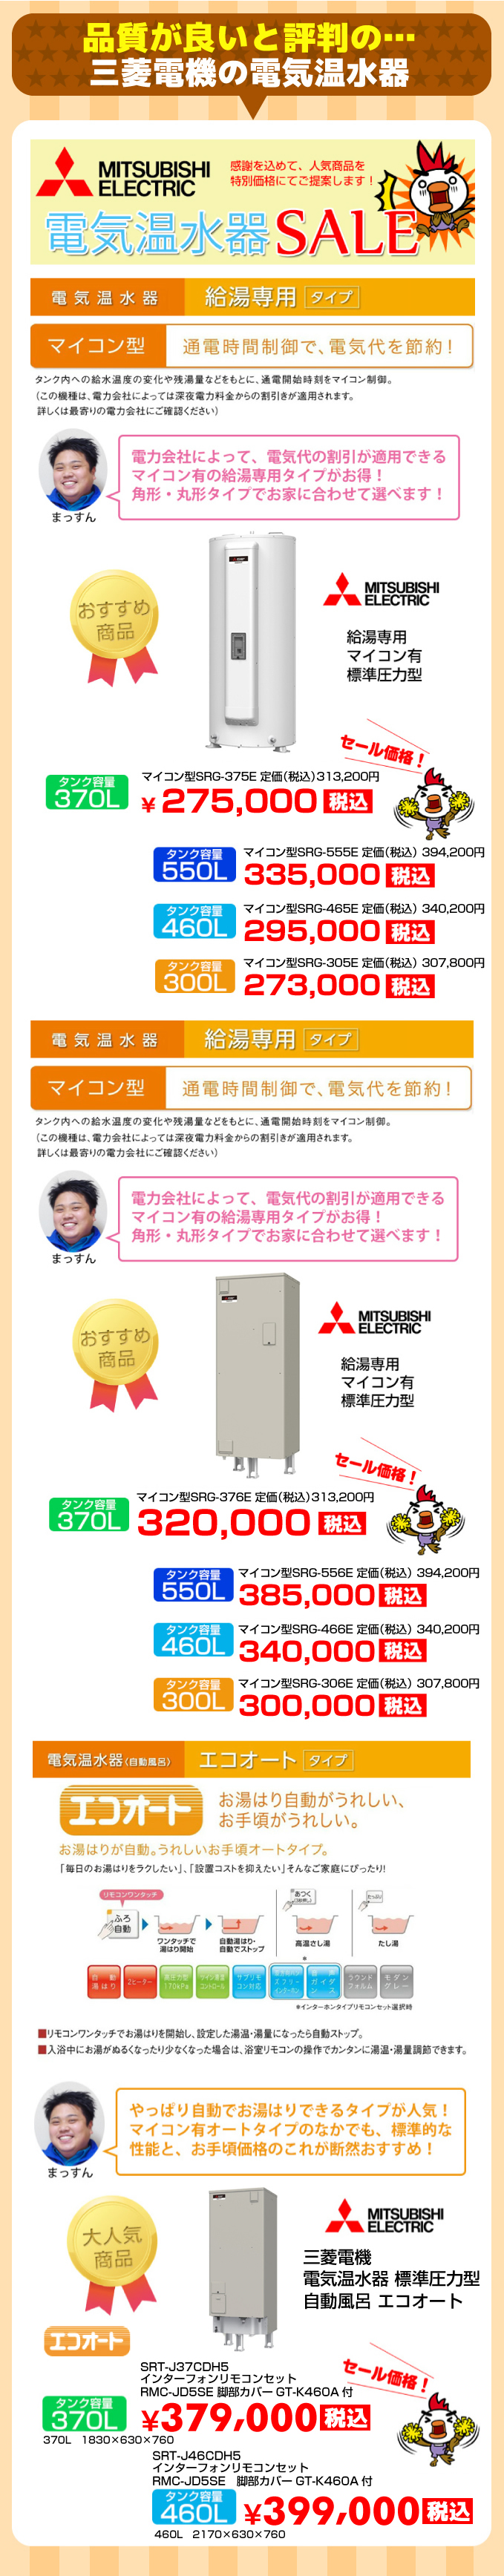 三菱電機 電気温水器‐給湯機器と住宅設備リフォーム工事のアンシン